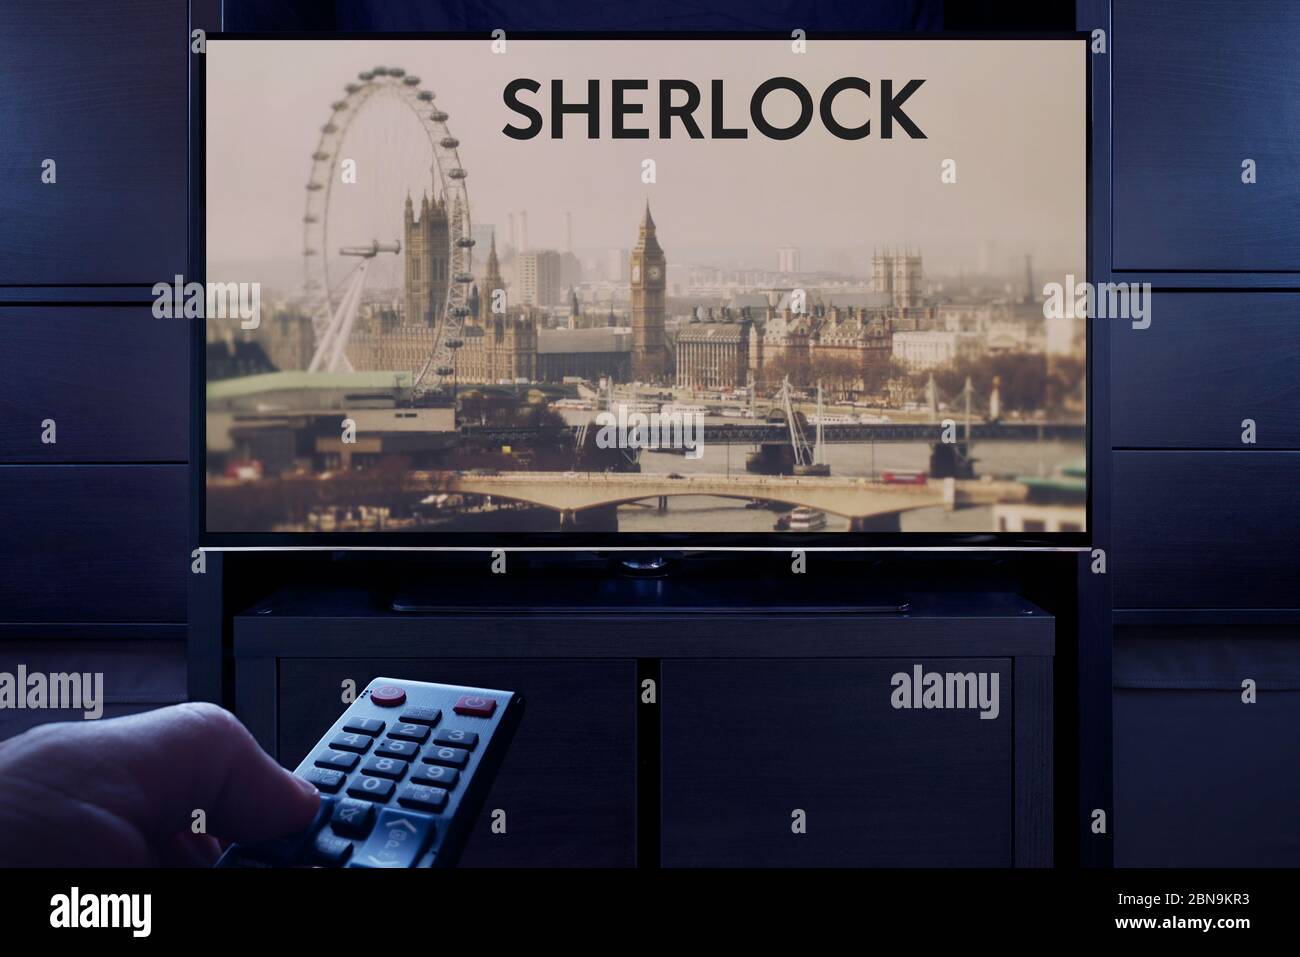 Un homme pointe une télécommande vers le téléviseur qui affiche l'écran principal Sherlock (usage éditorial uniquement). Banque D'Images